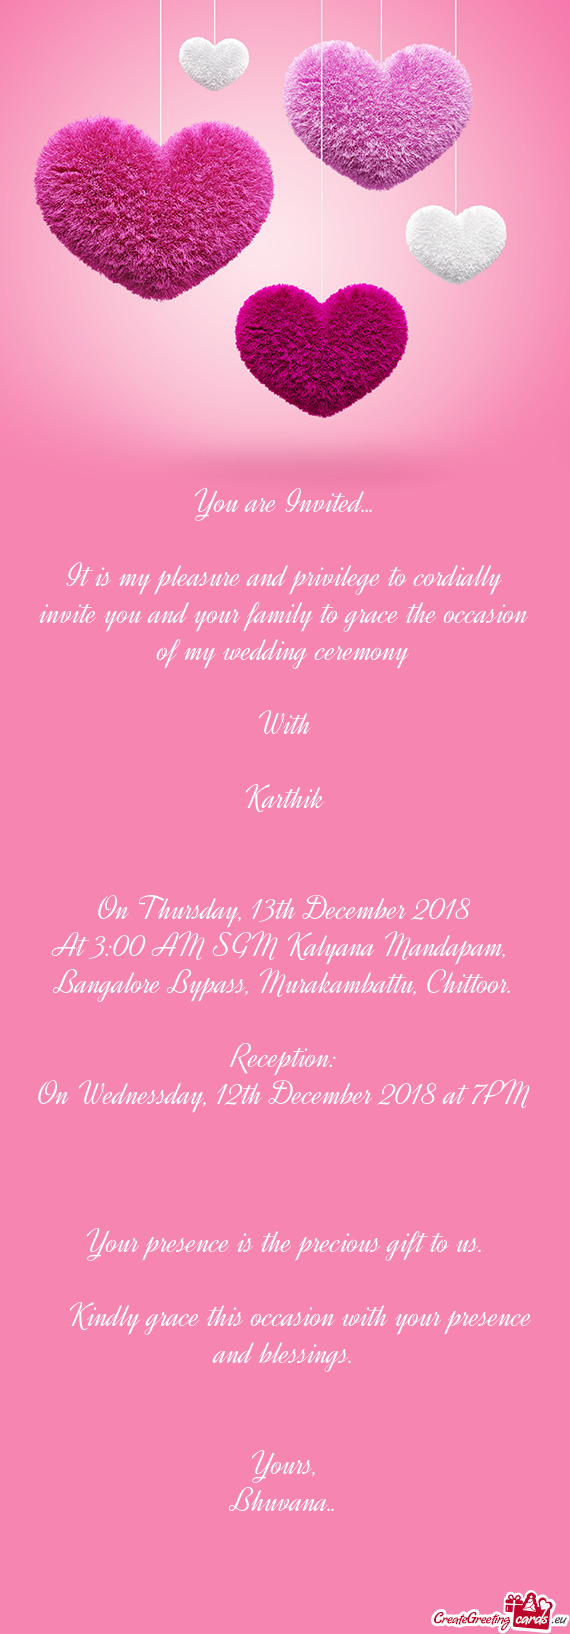 My wedding ceremony
 
 With
 
 Karthik
 
 
 On Thursday